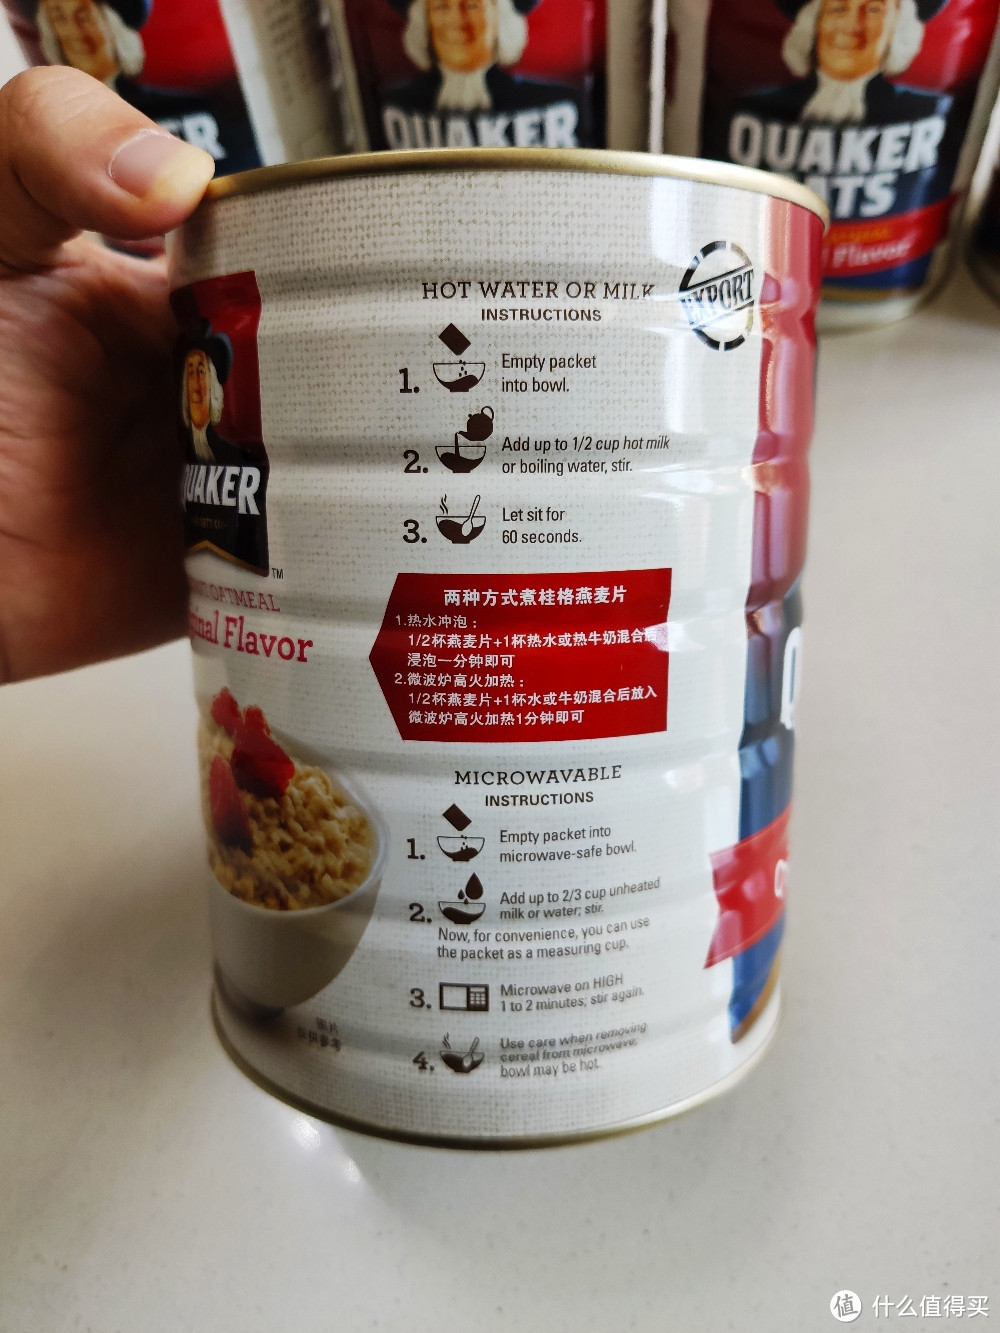 醇香原味澳洲天然燕麦片:QUAKER 桂格 马来西亚进口即食燕麦片开箱